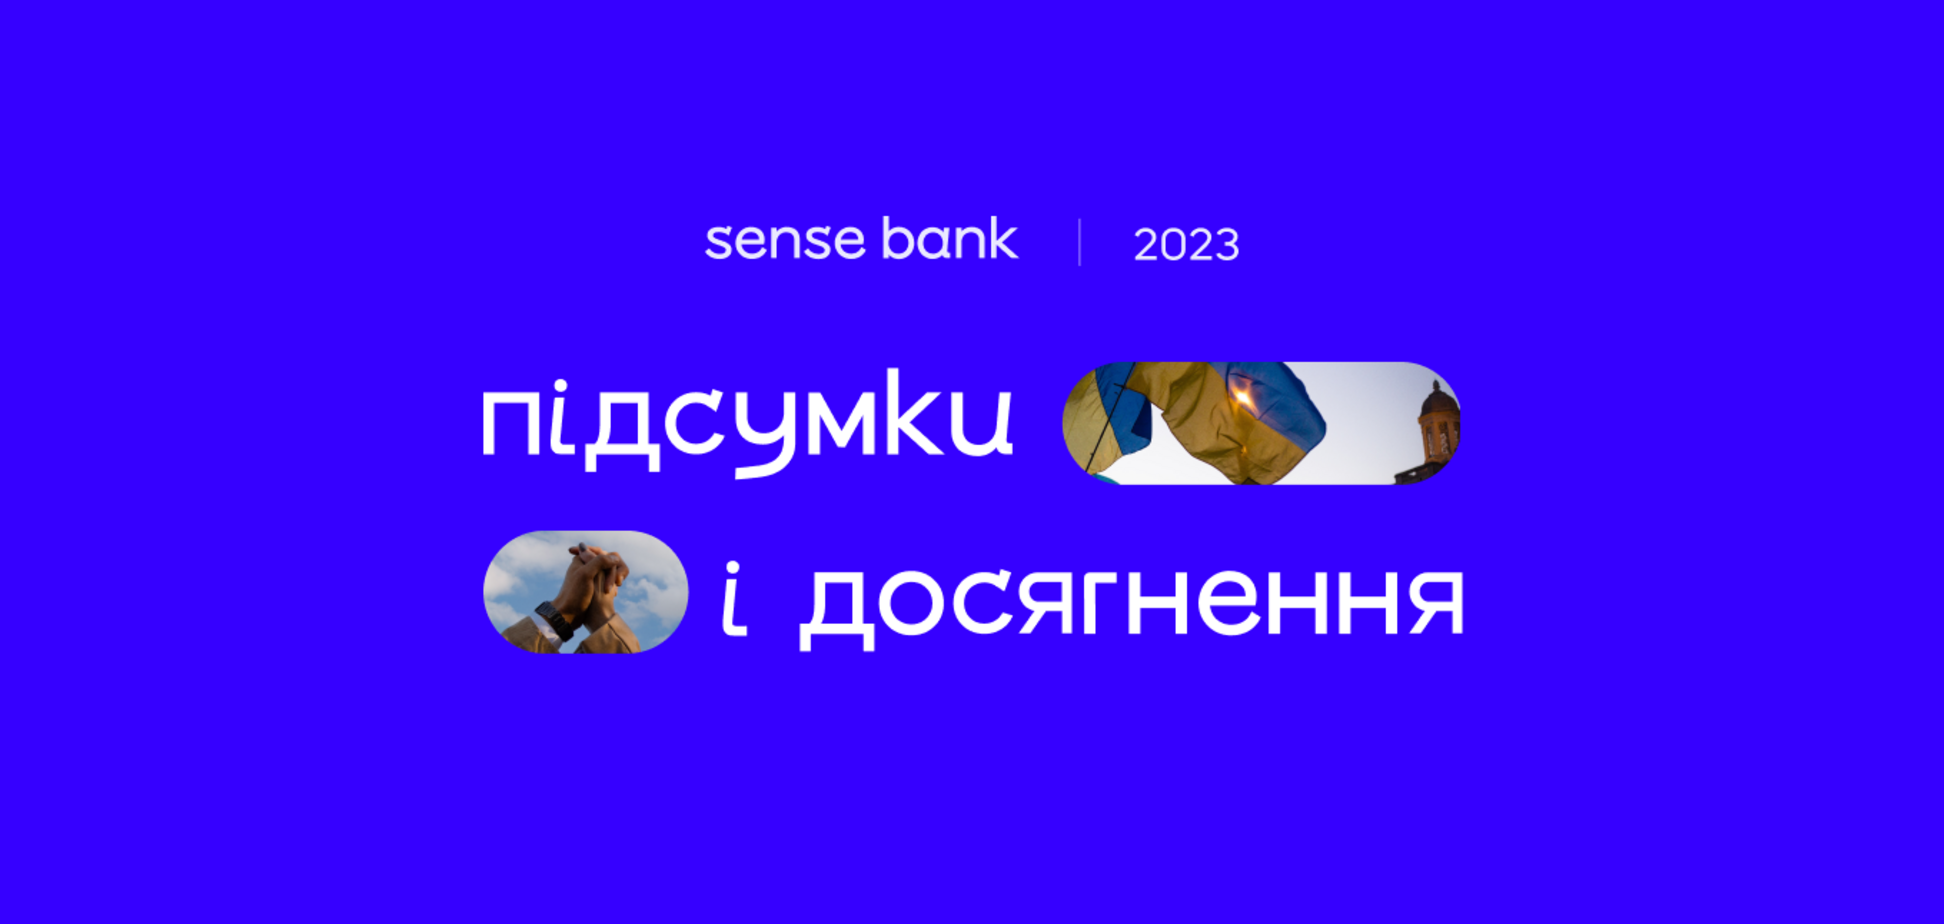 Первый полный год после ребрендинга: Sense Bank подытожил банковские показатели 2023 года